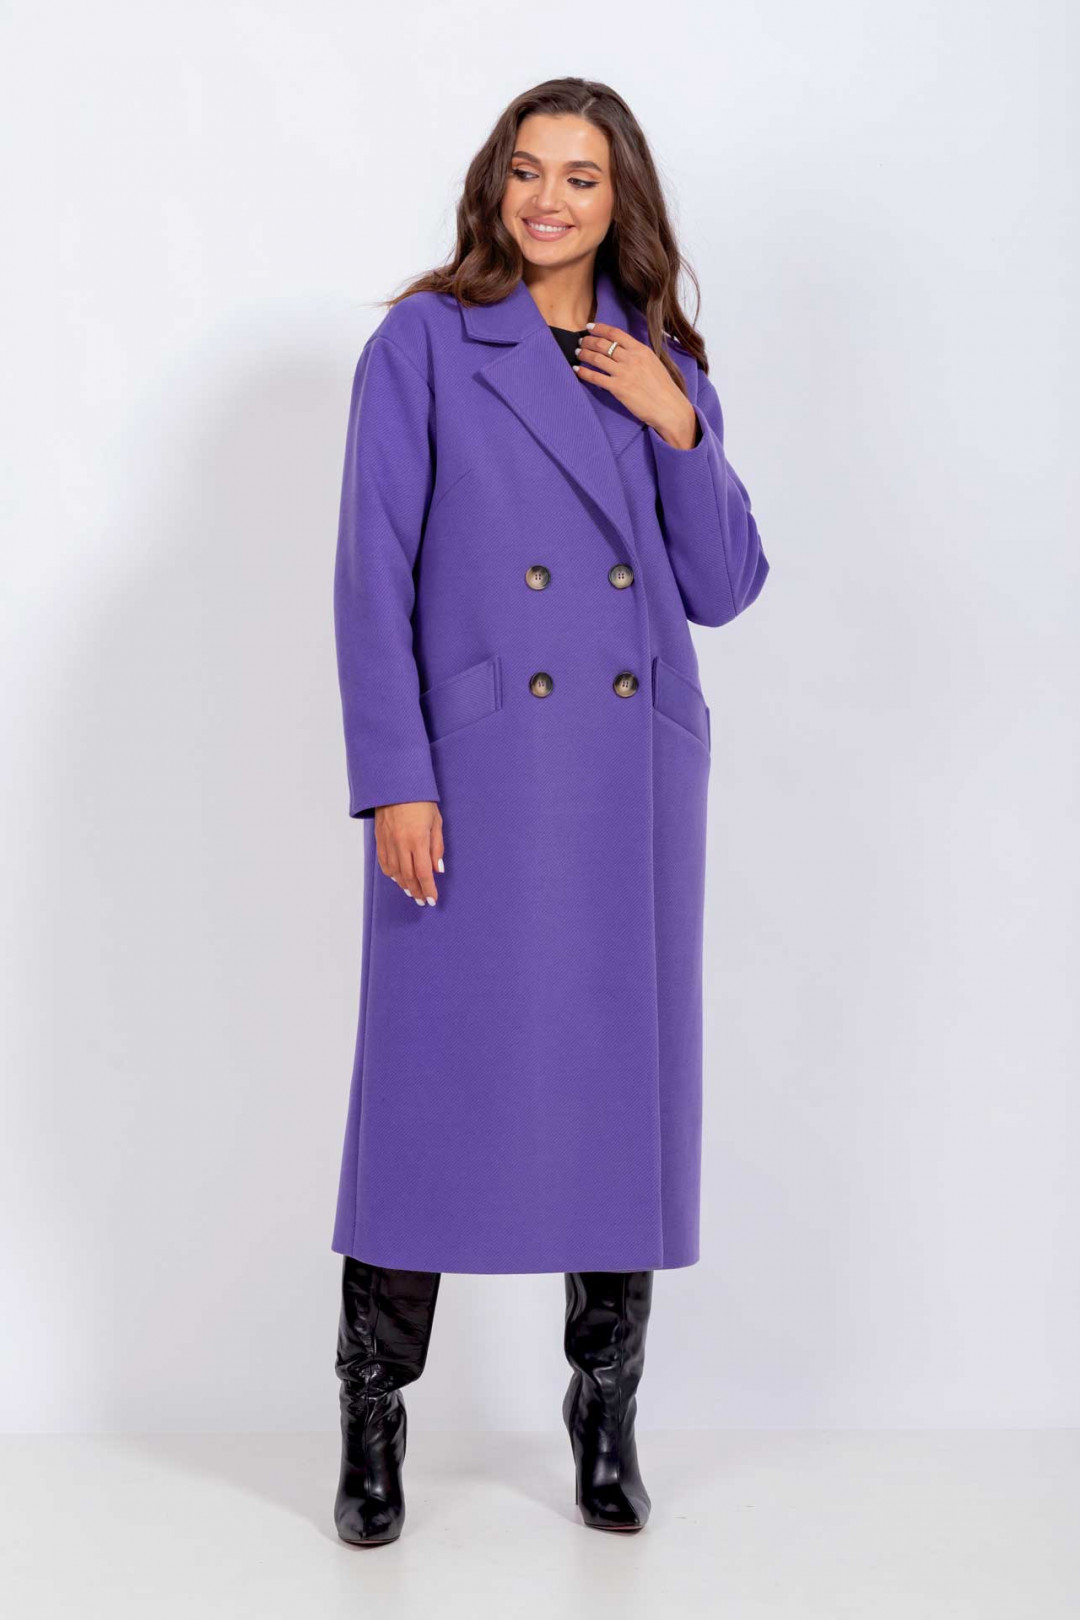 Пальто MisLana С855/1 фиолет